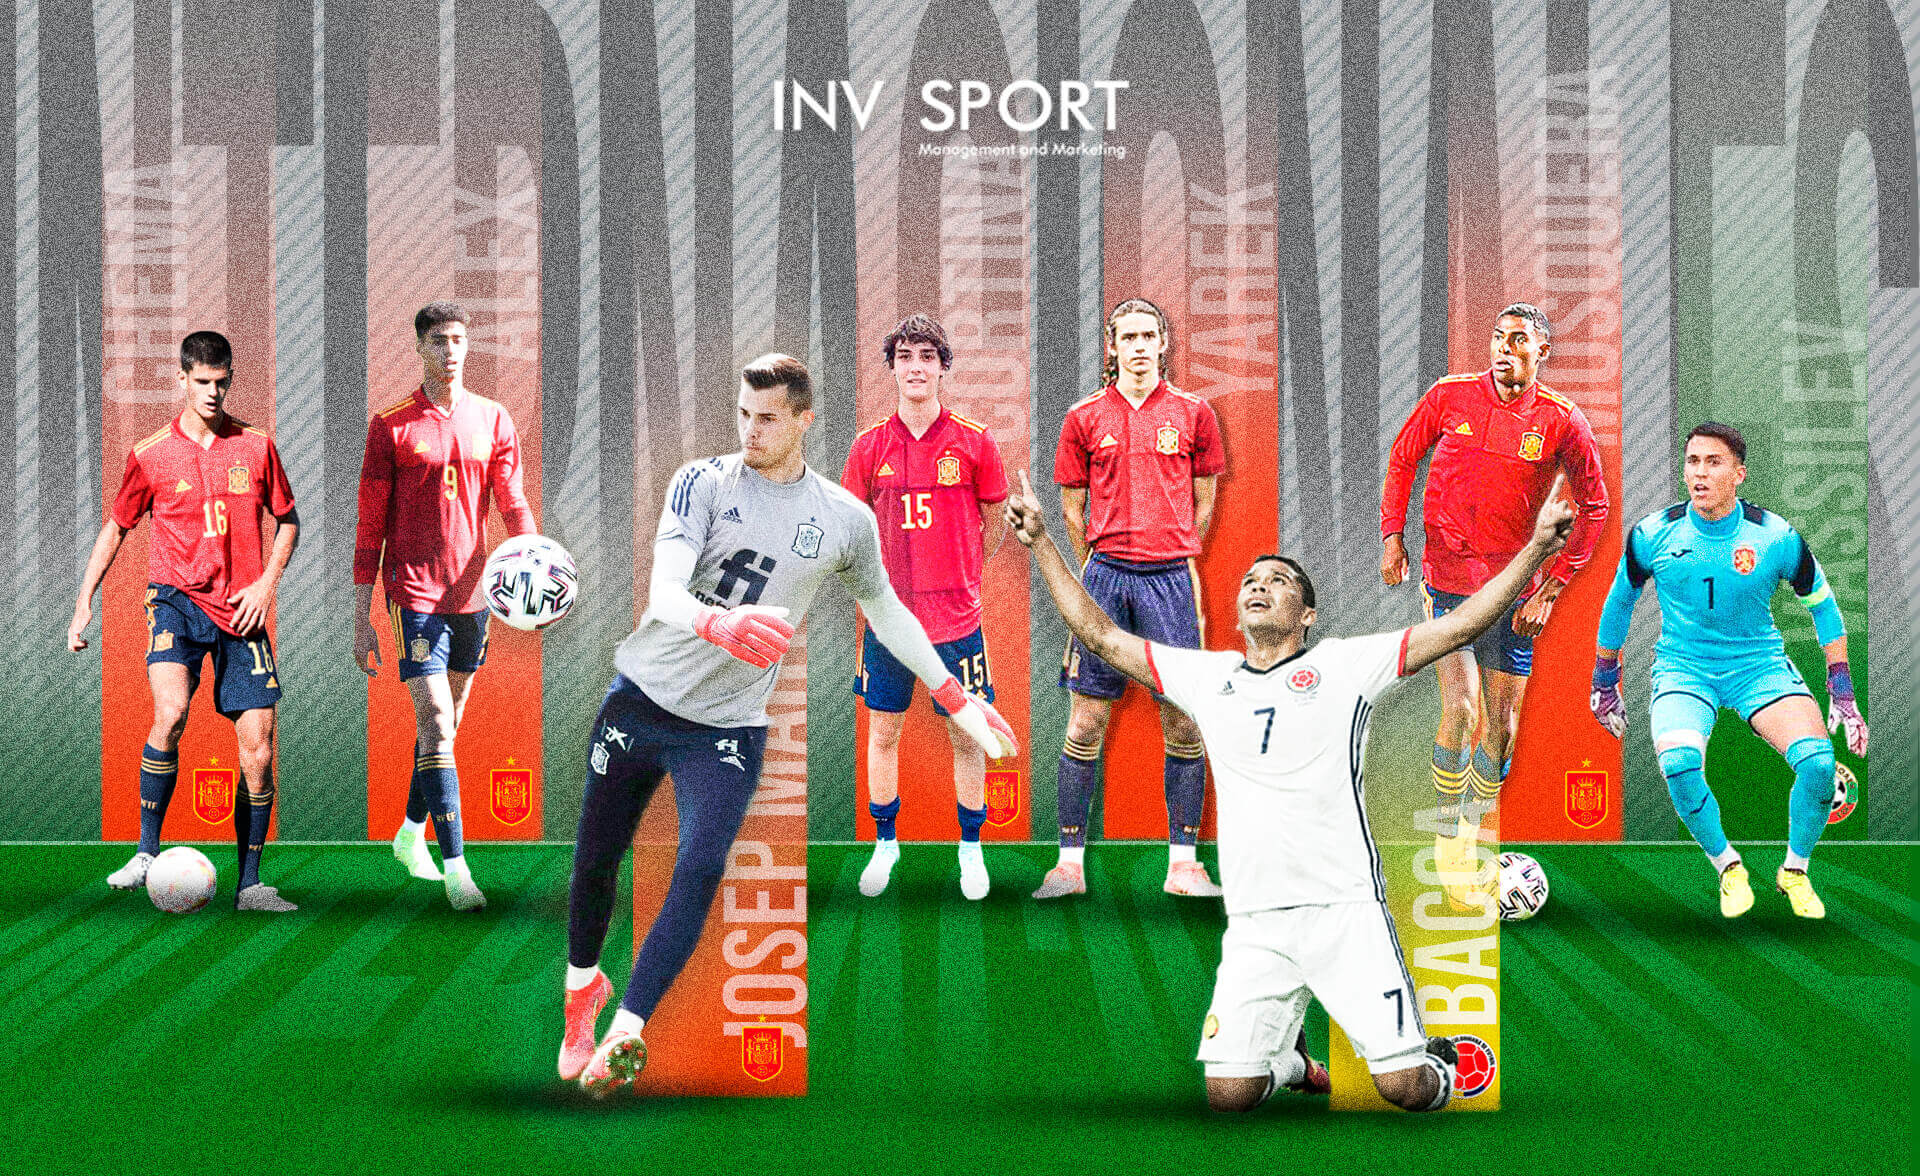 Mosaico con imágenes de jugadores internacionales de INVsport